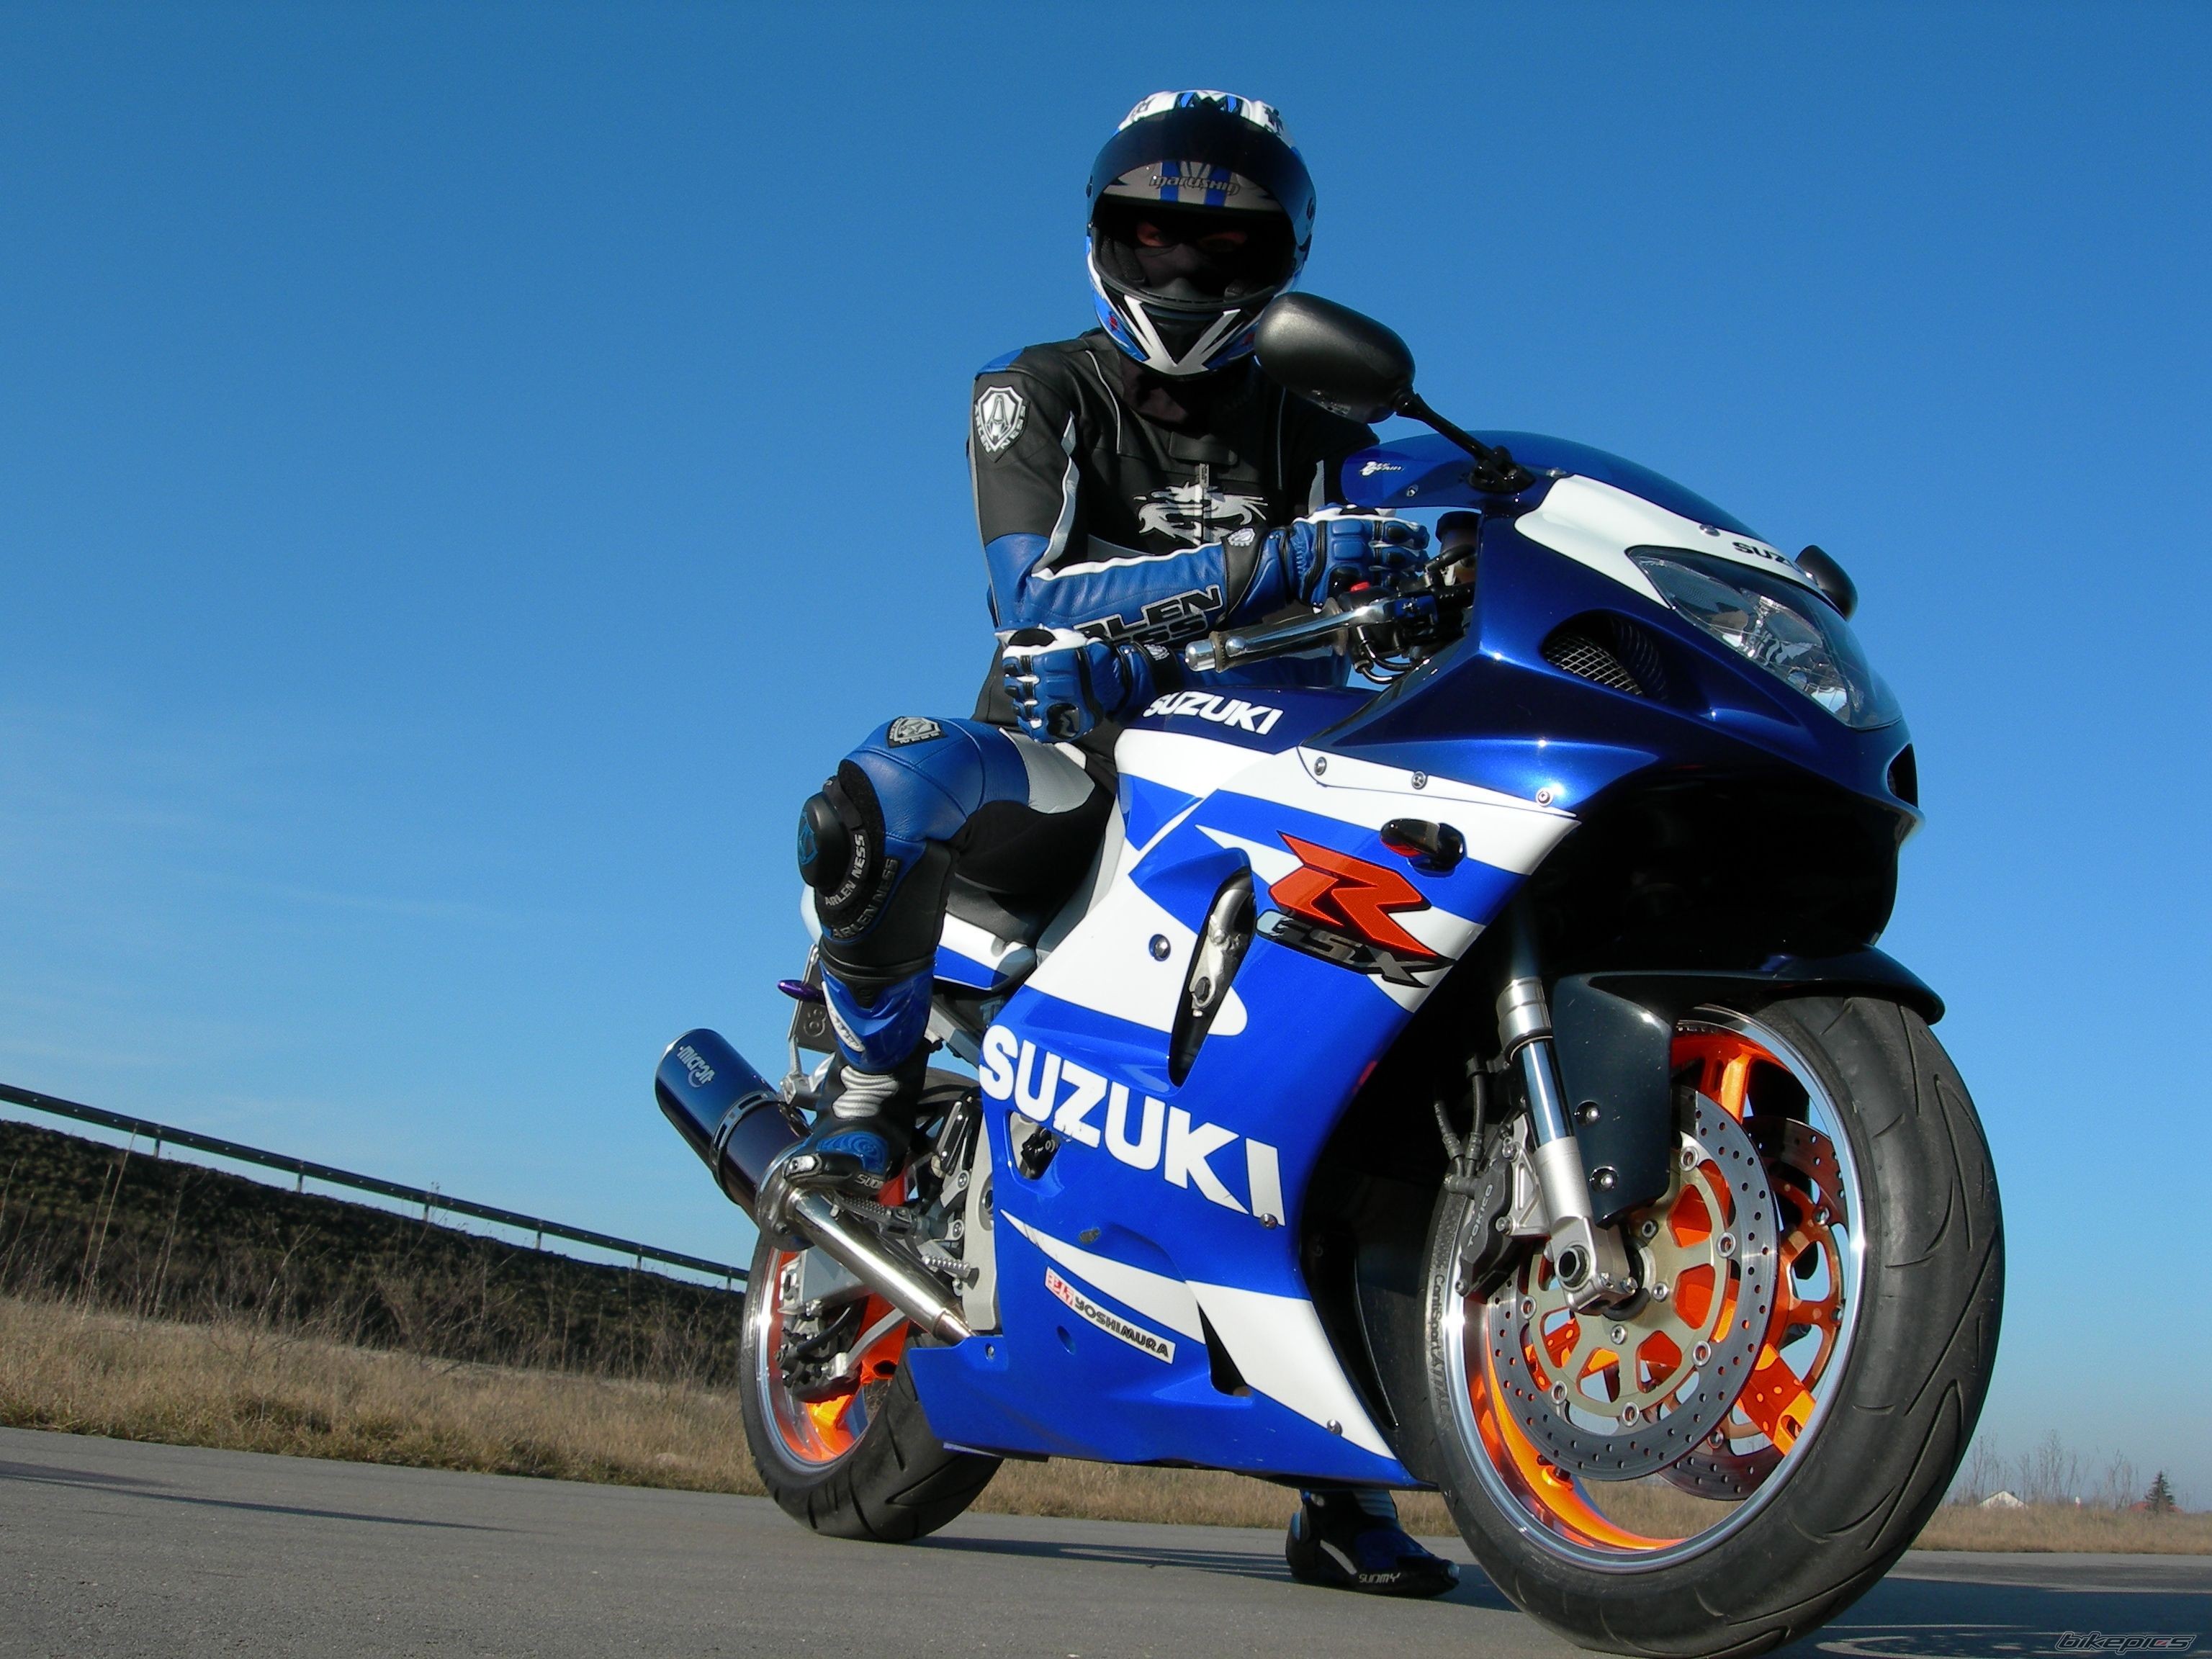 Suzuki, motorcycles - desktop wallpaper